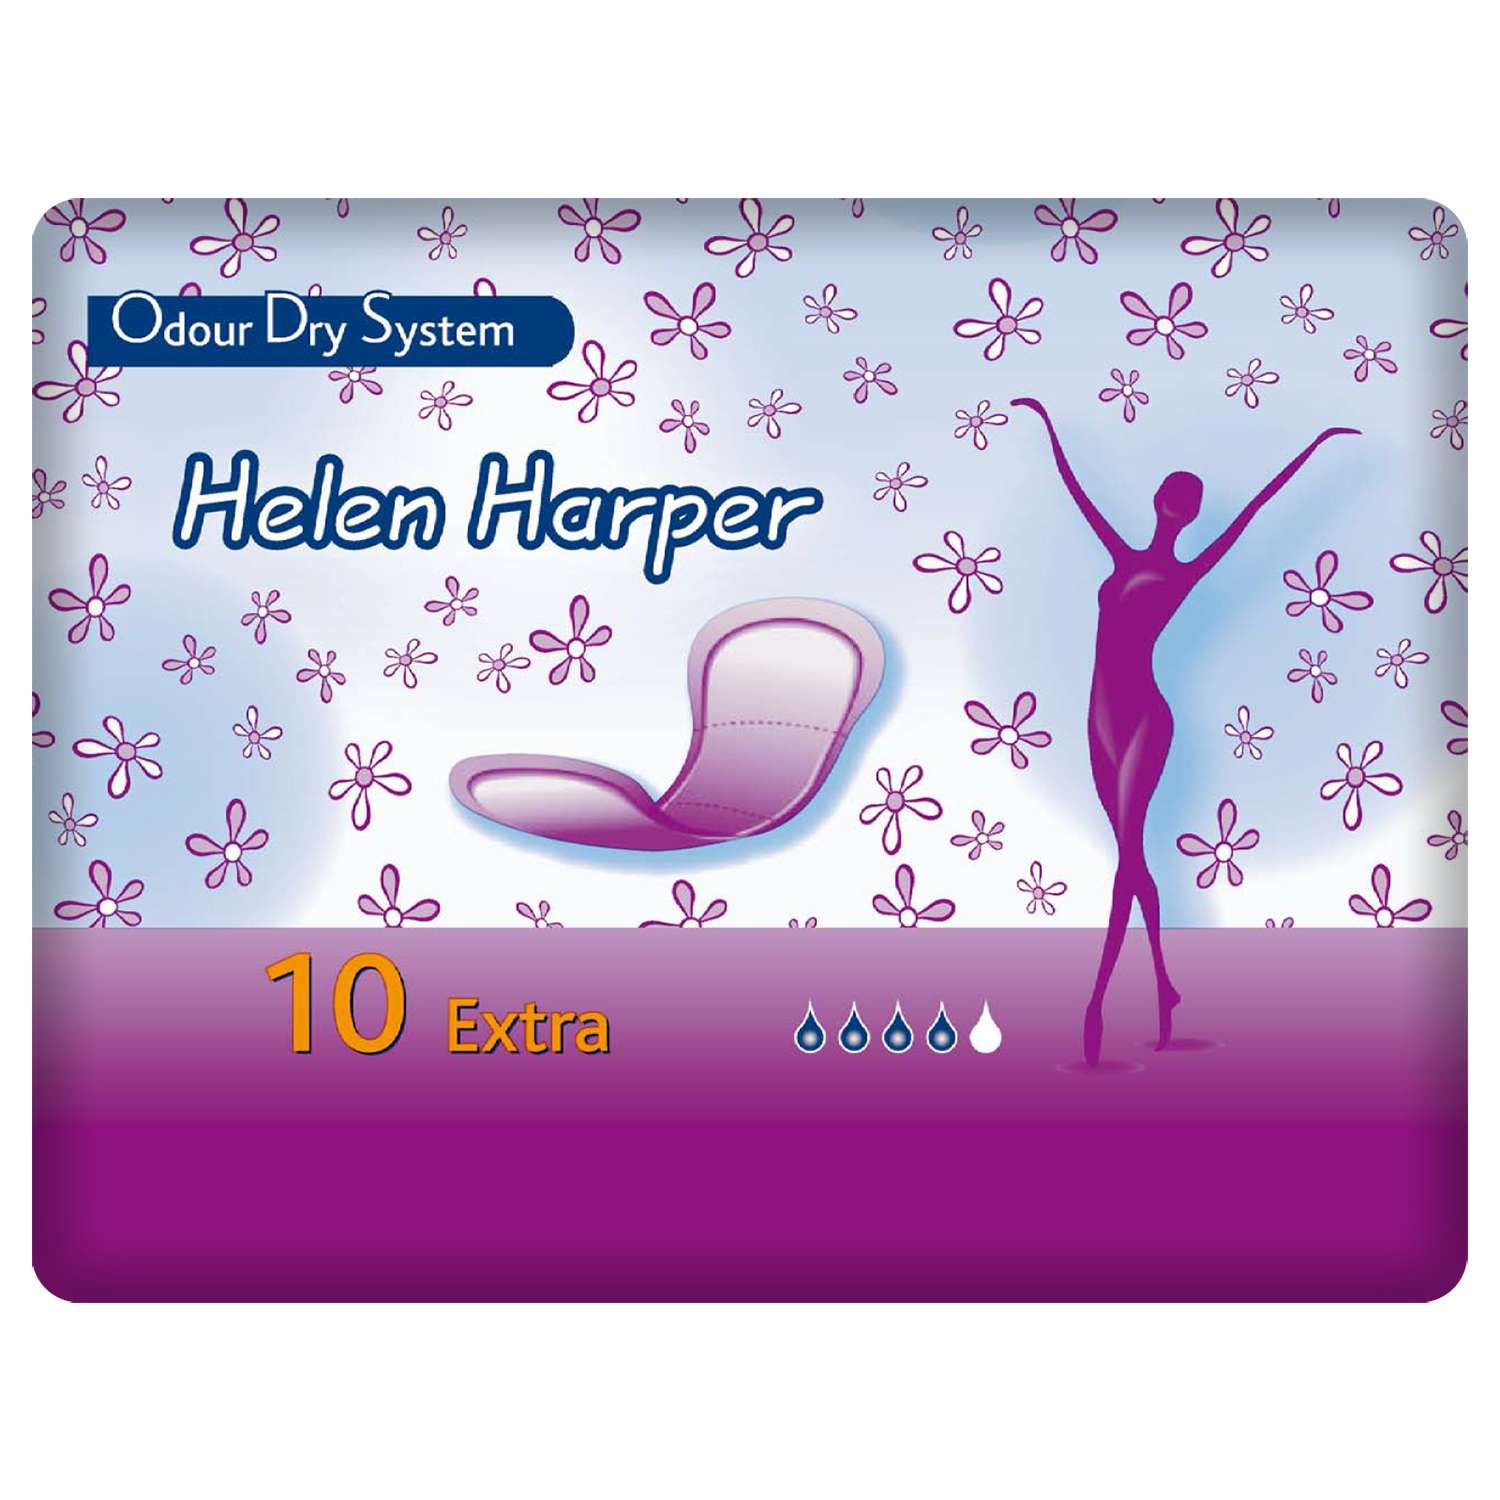 Прокладки послеродовые Helen Harper Odour Dry System Extra № 10 - фото 1